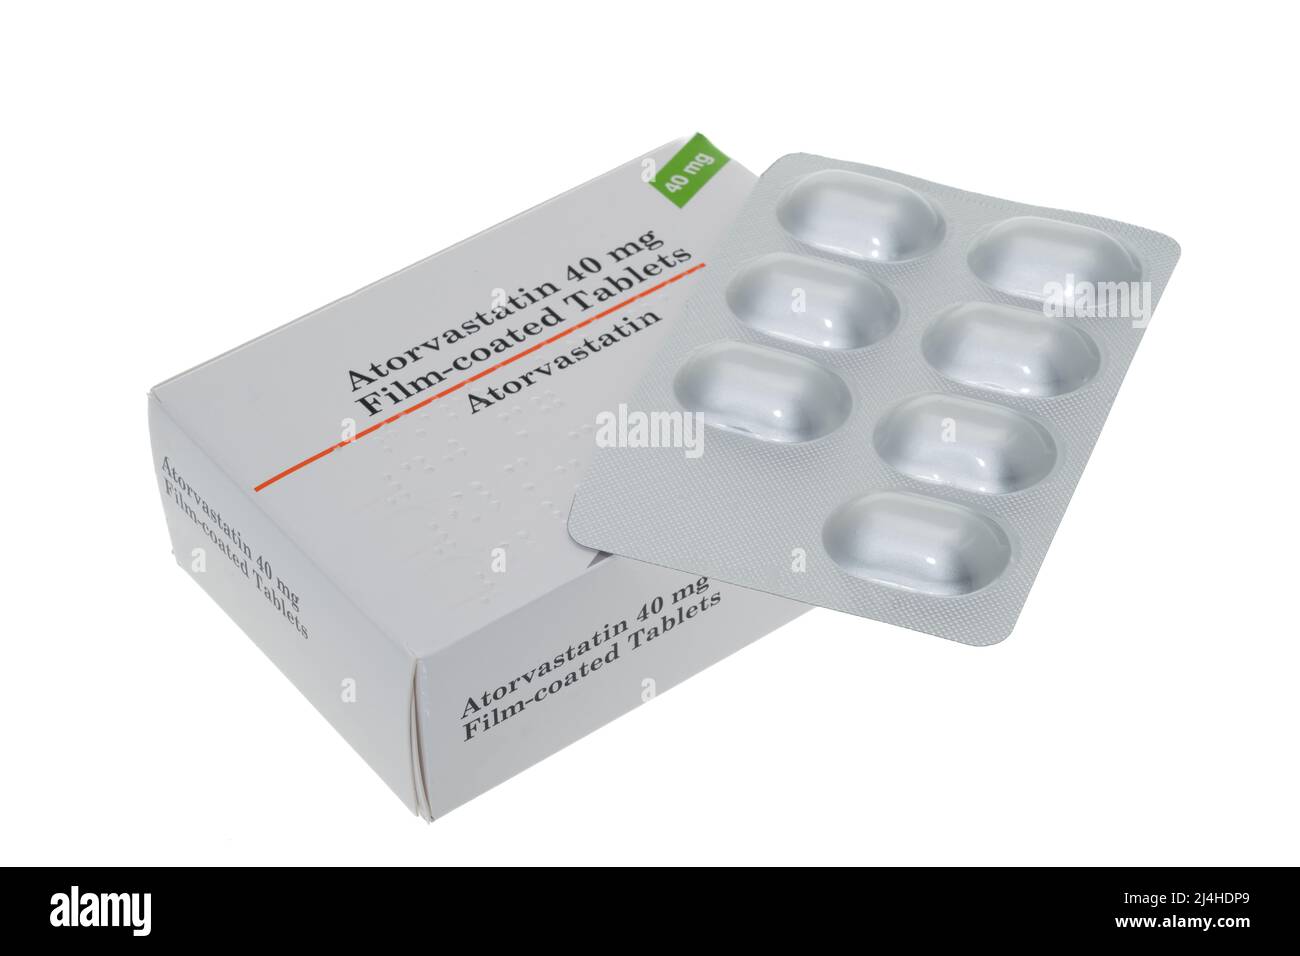 Una caja genérica y un envase blíster de tabletas de Atorvastatin - fondo blanco. La atorvastatina es un miembro de la clase de medicamento conocido como estatinas. Foto de stock